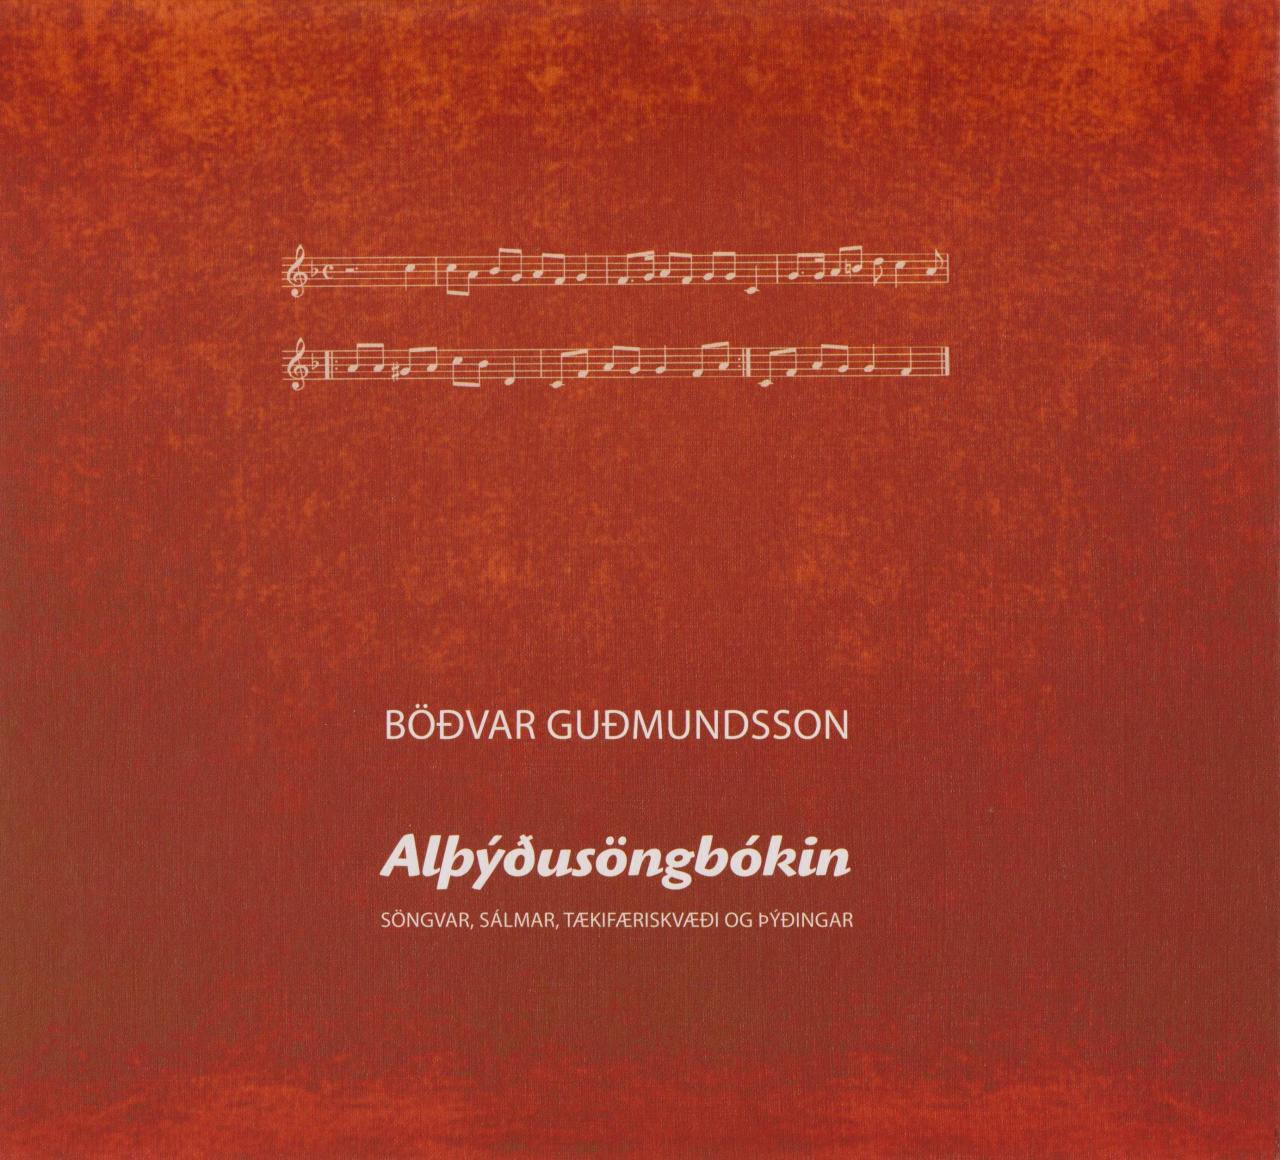 Alþýðusöngbókin (Songs For the People)